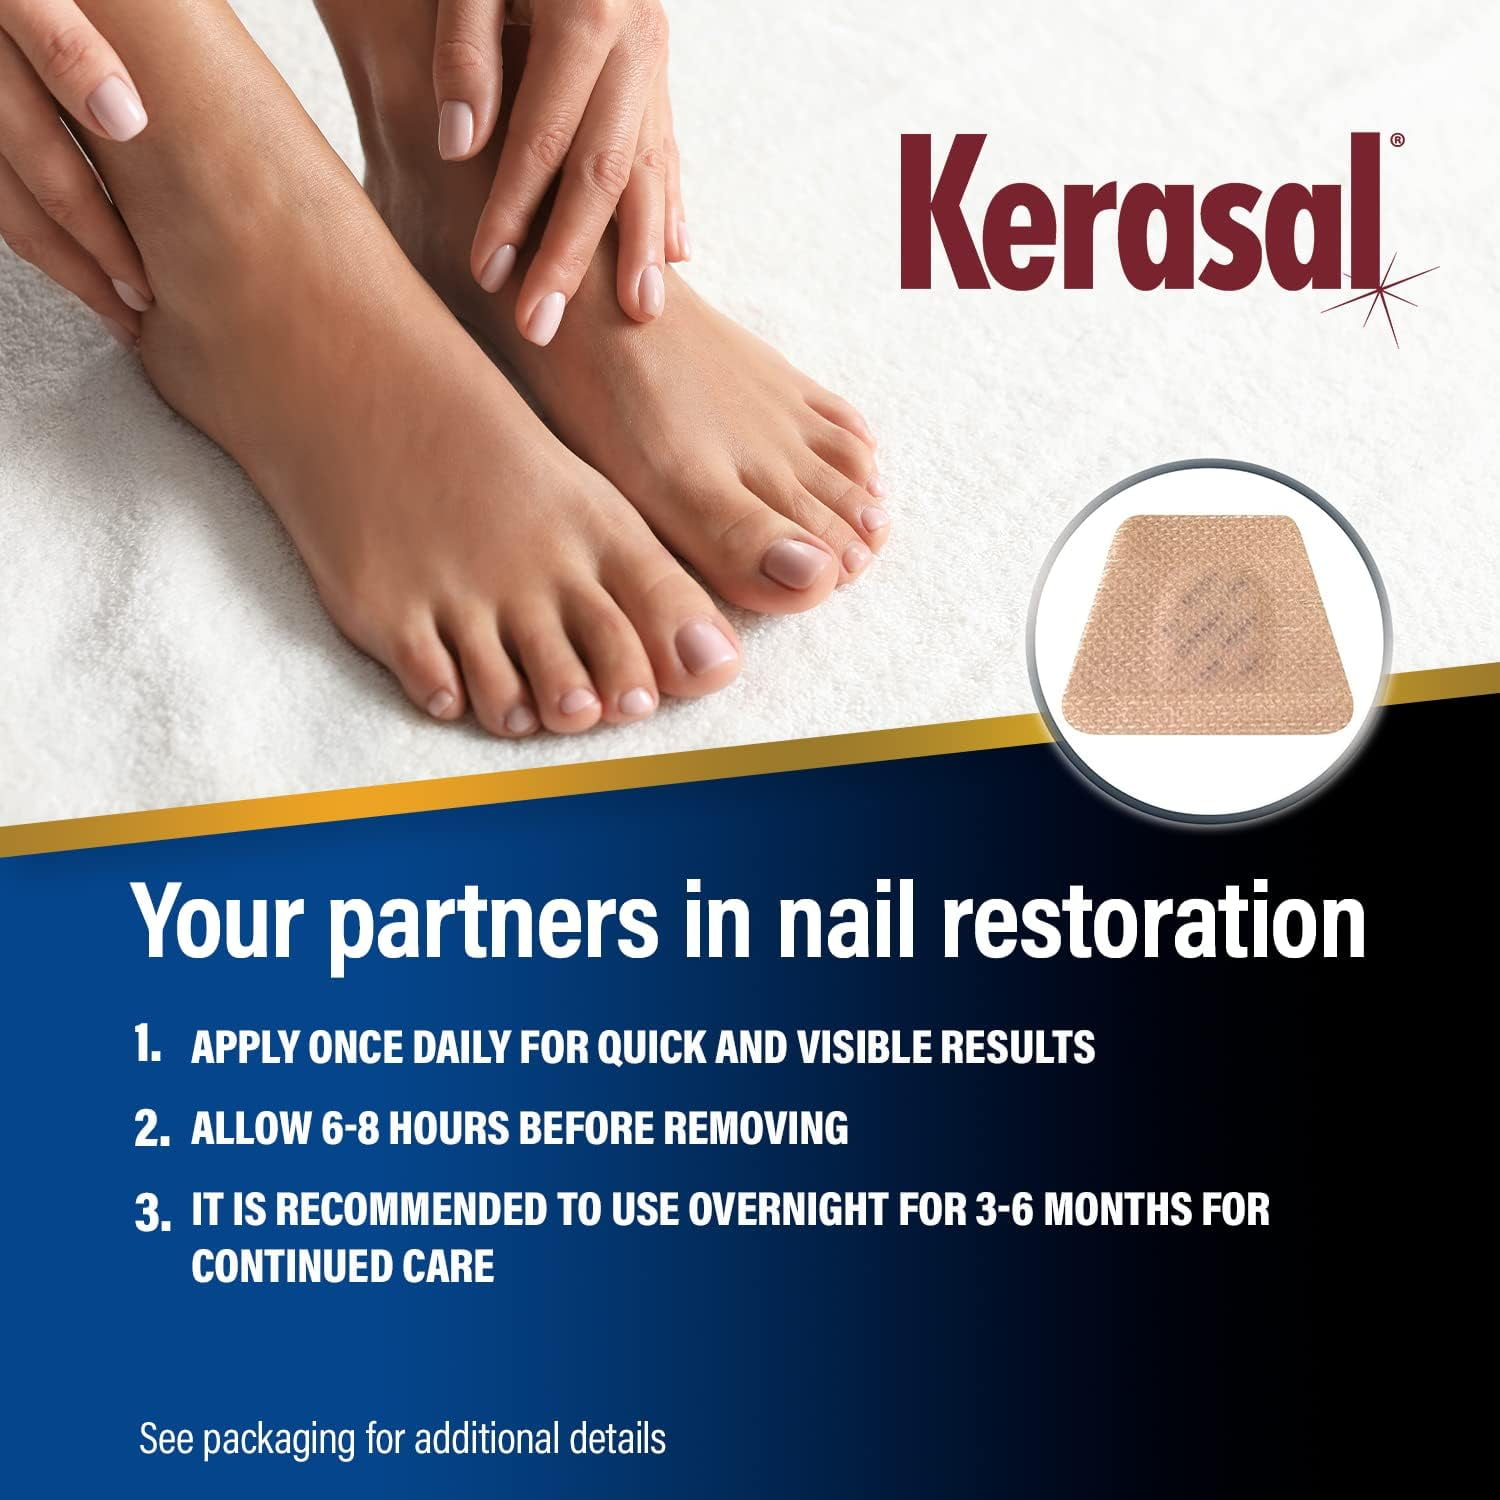 Kerasal Nail: Restore Healthy Nail Appearance (30 Sec) - YouTube